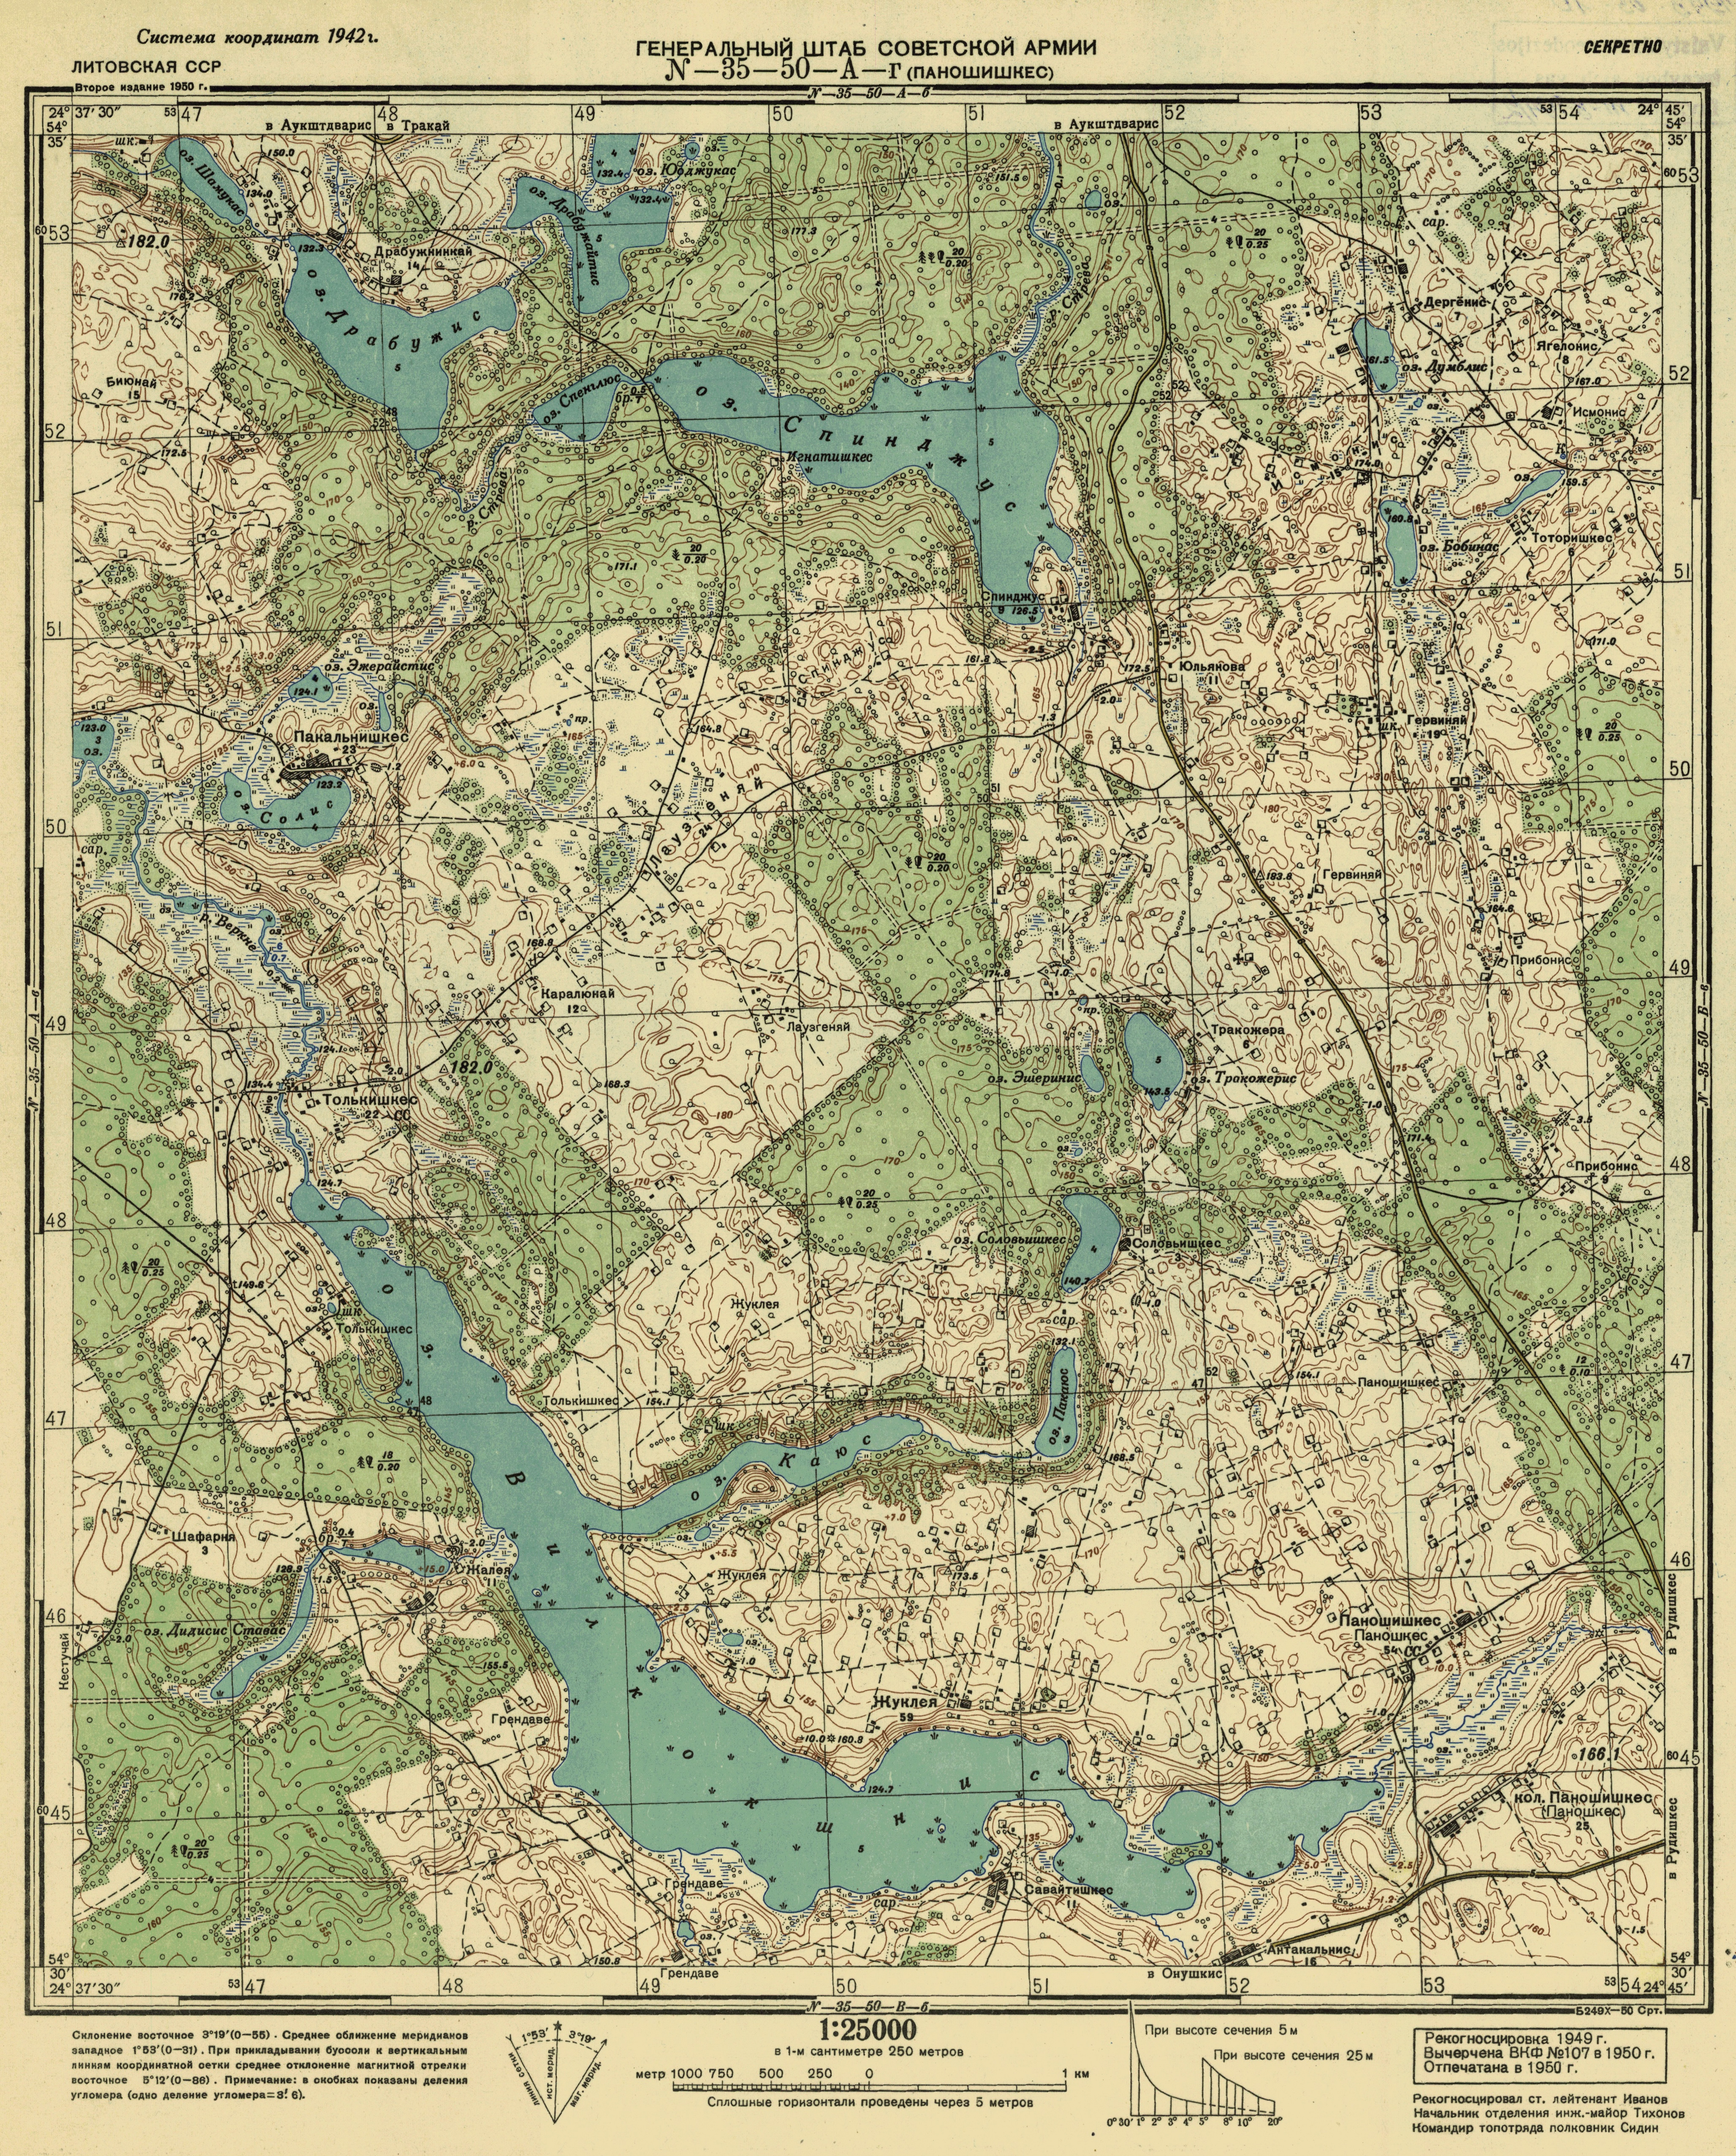 Pakalninkai, Trakų rajonas - žemėlapis, 1949 metai